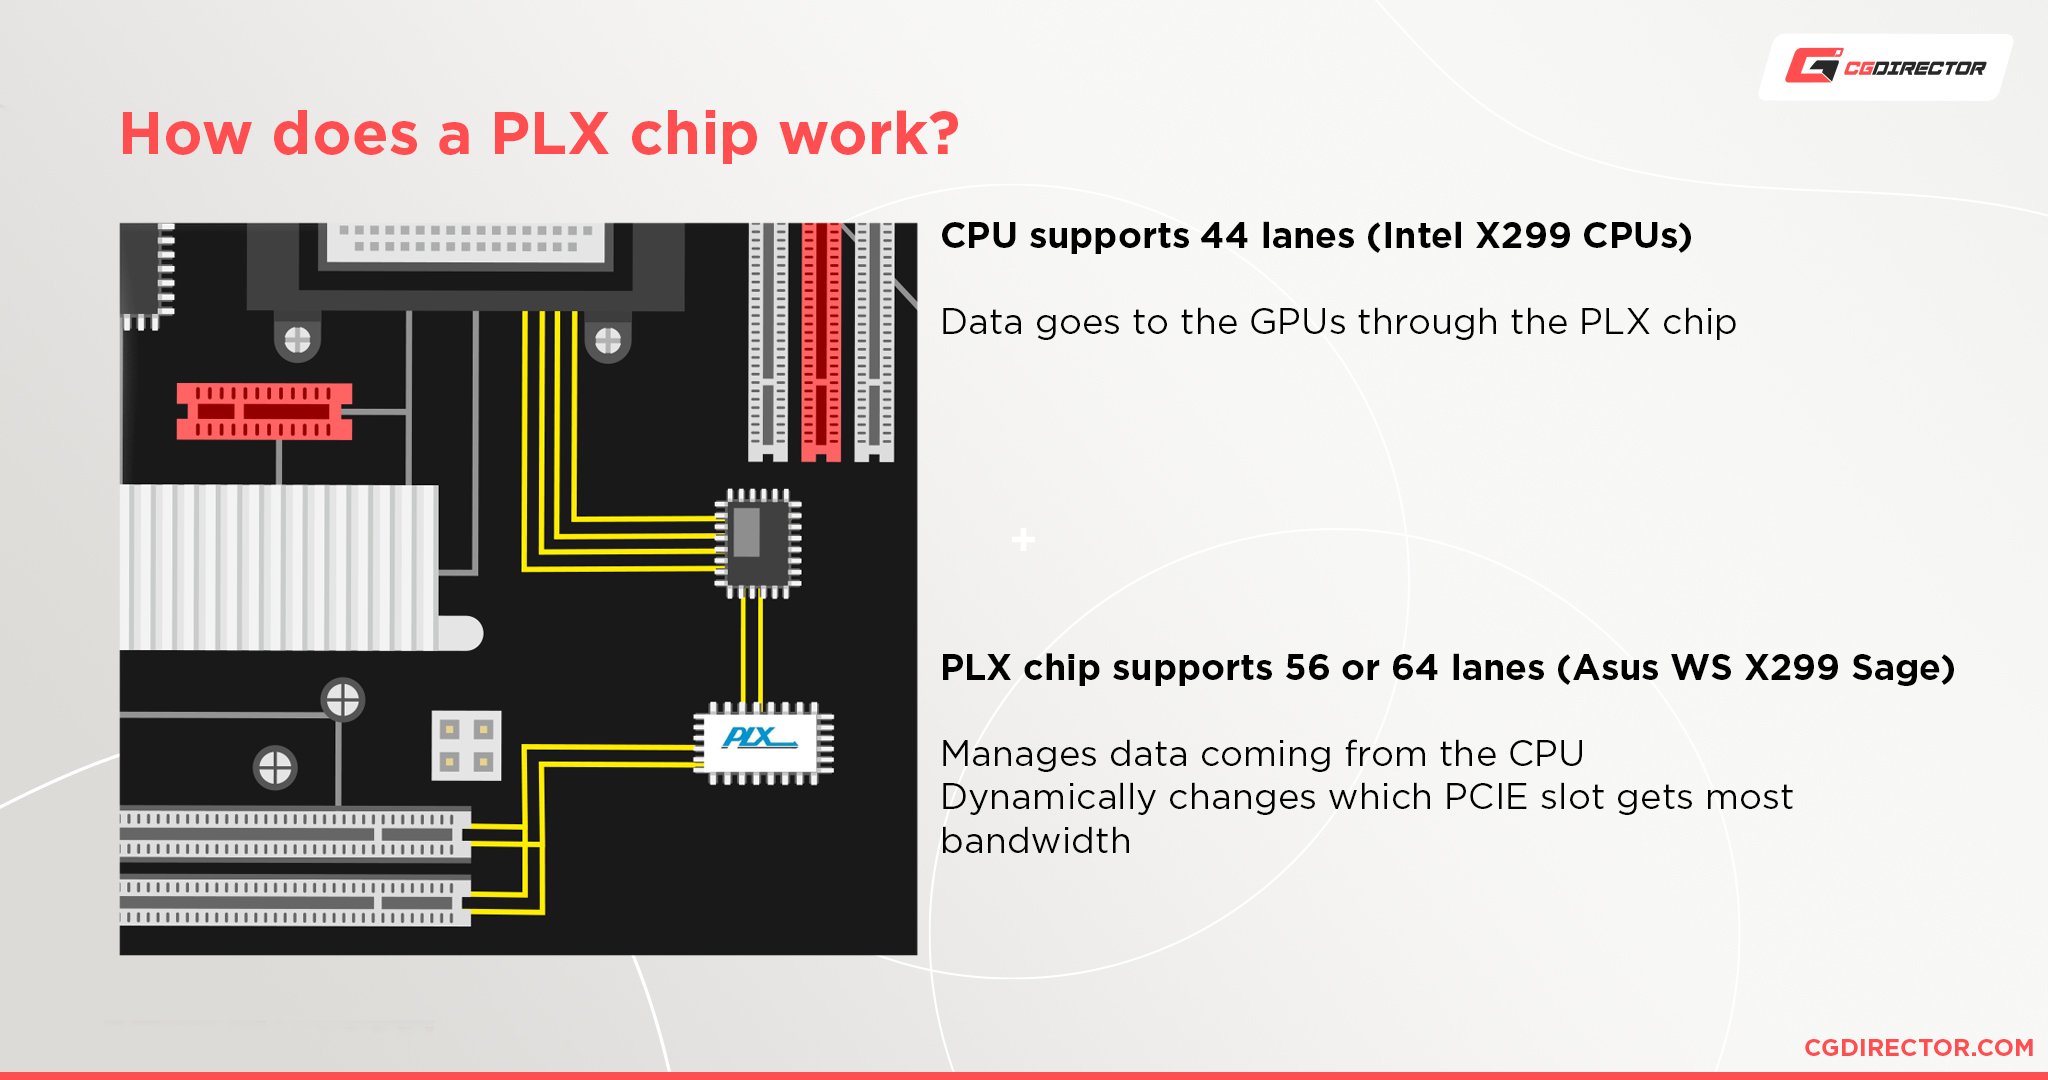 How do PLX chips work